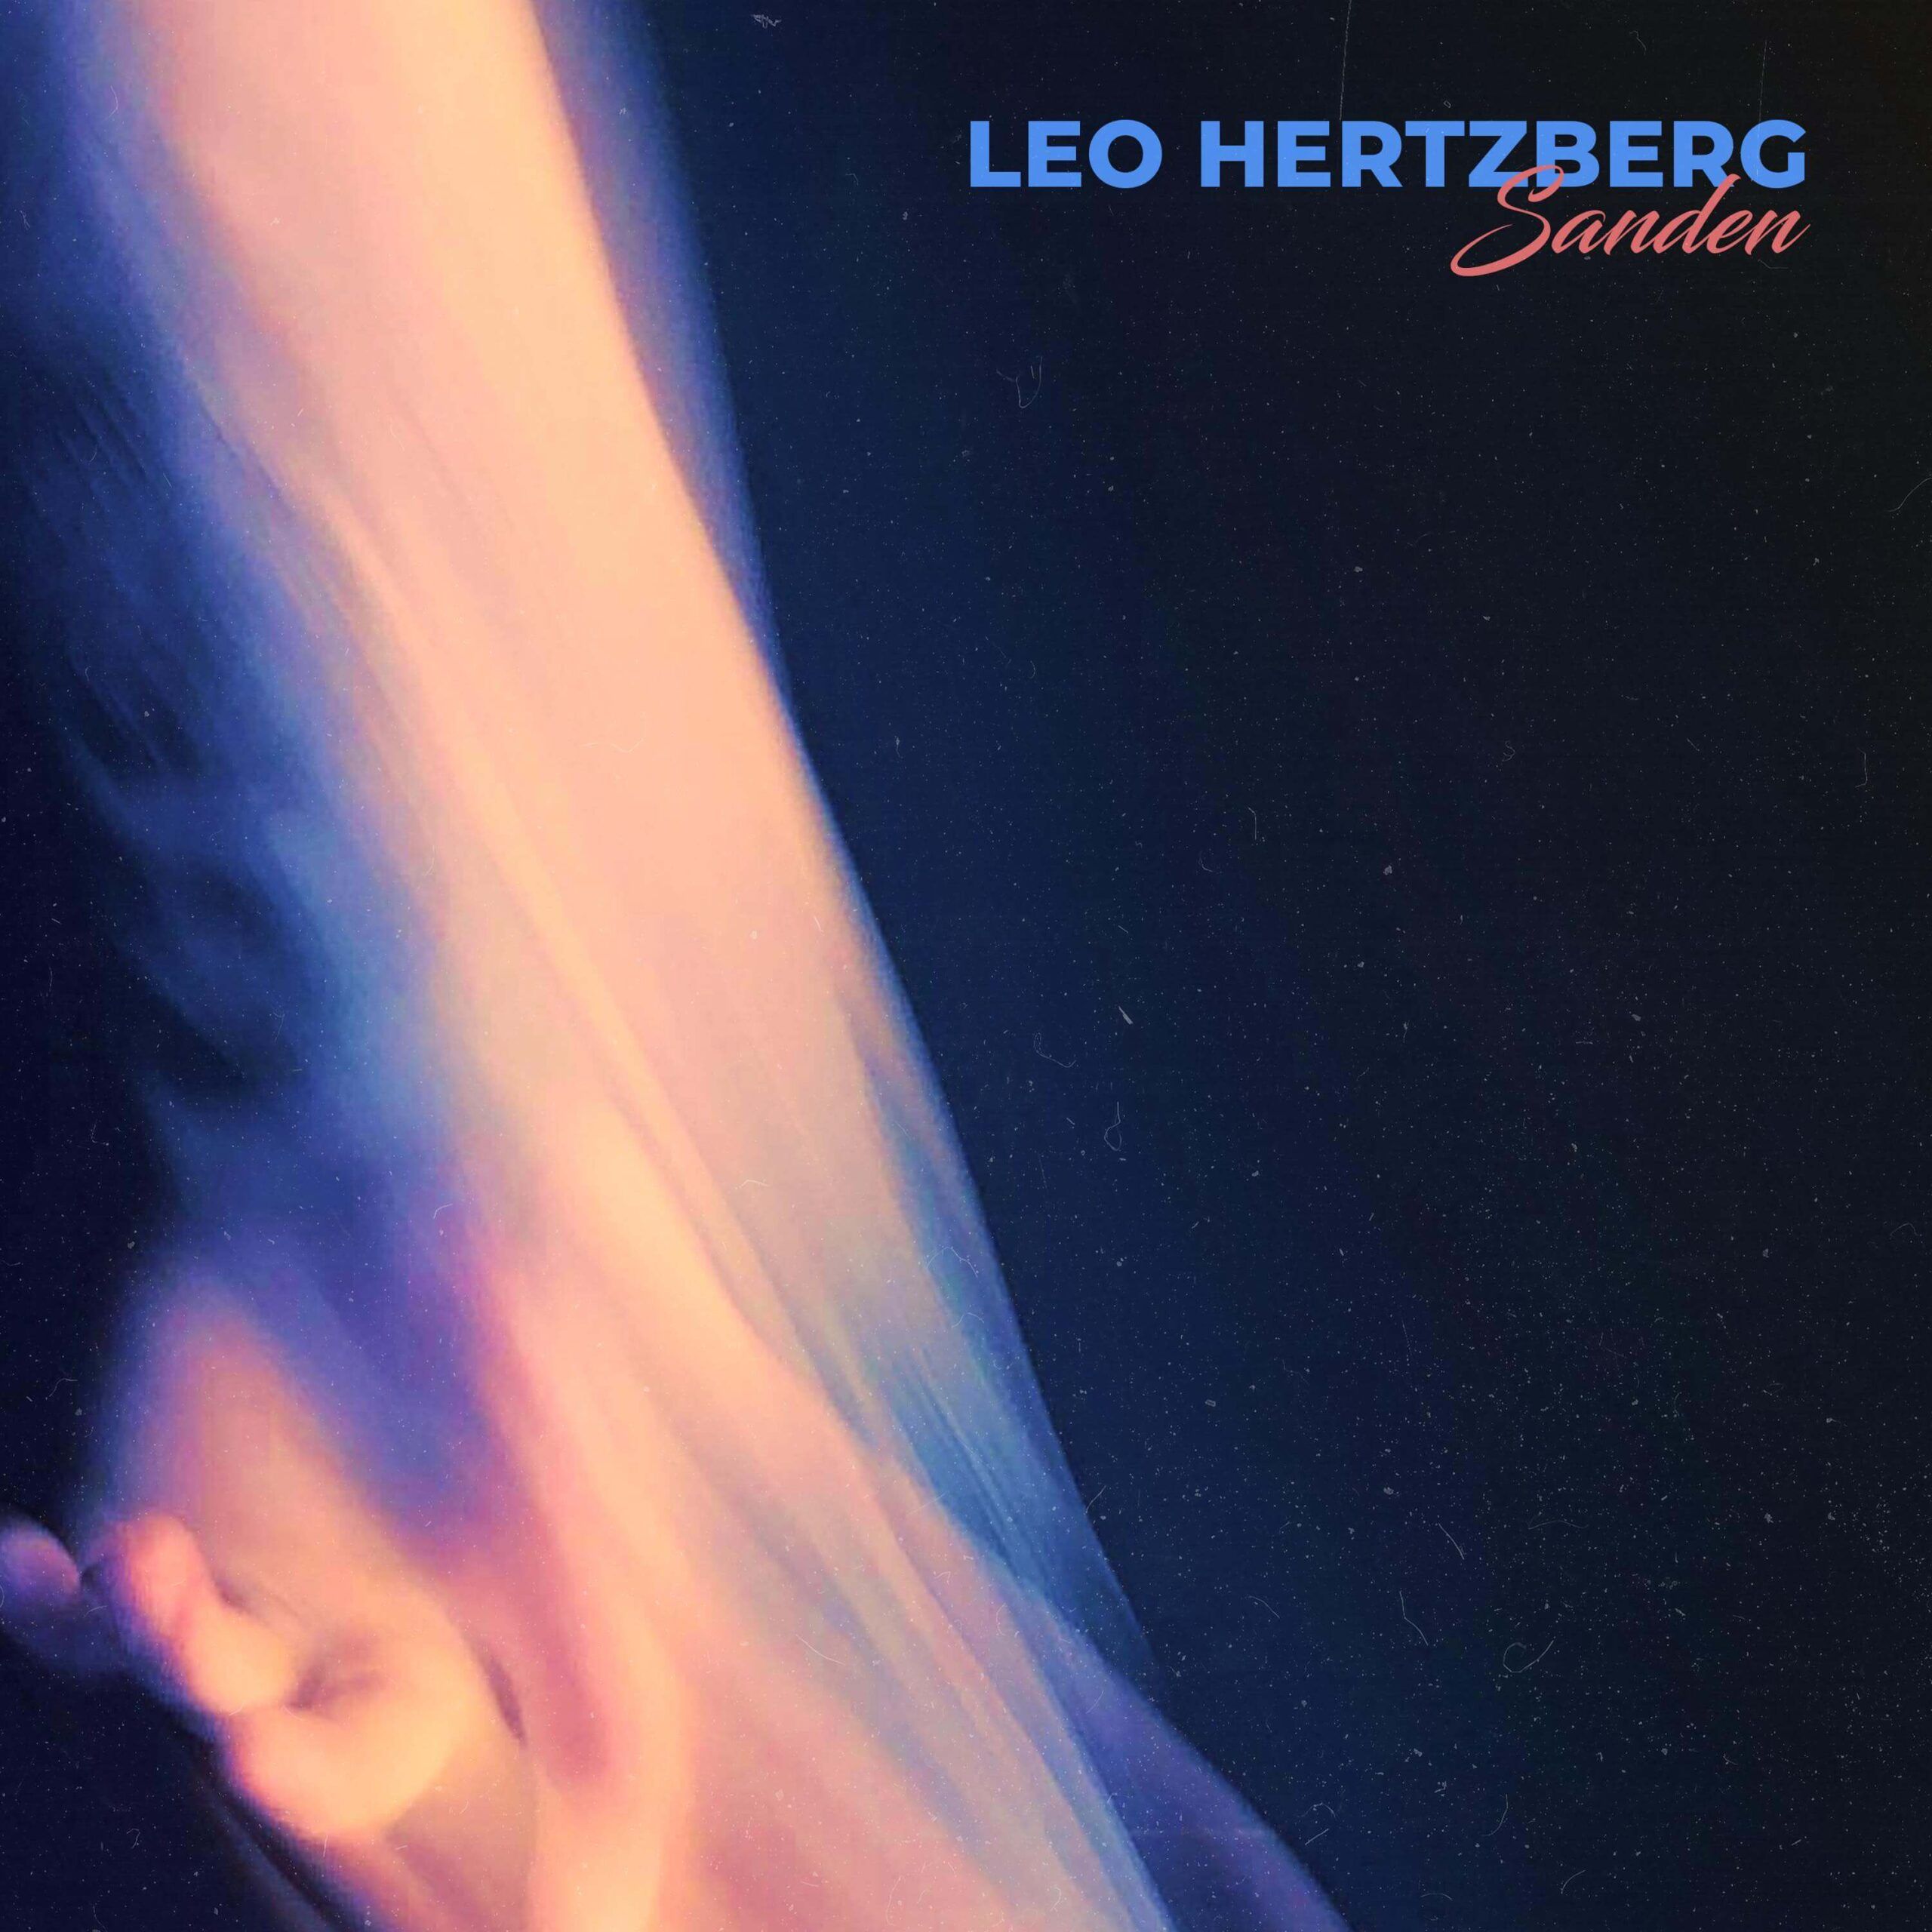 Leo Hertzberg sanden photo cover